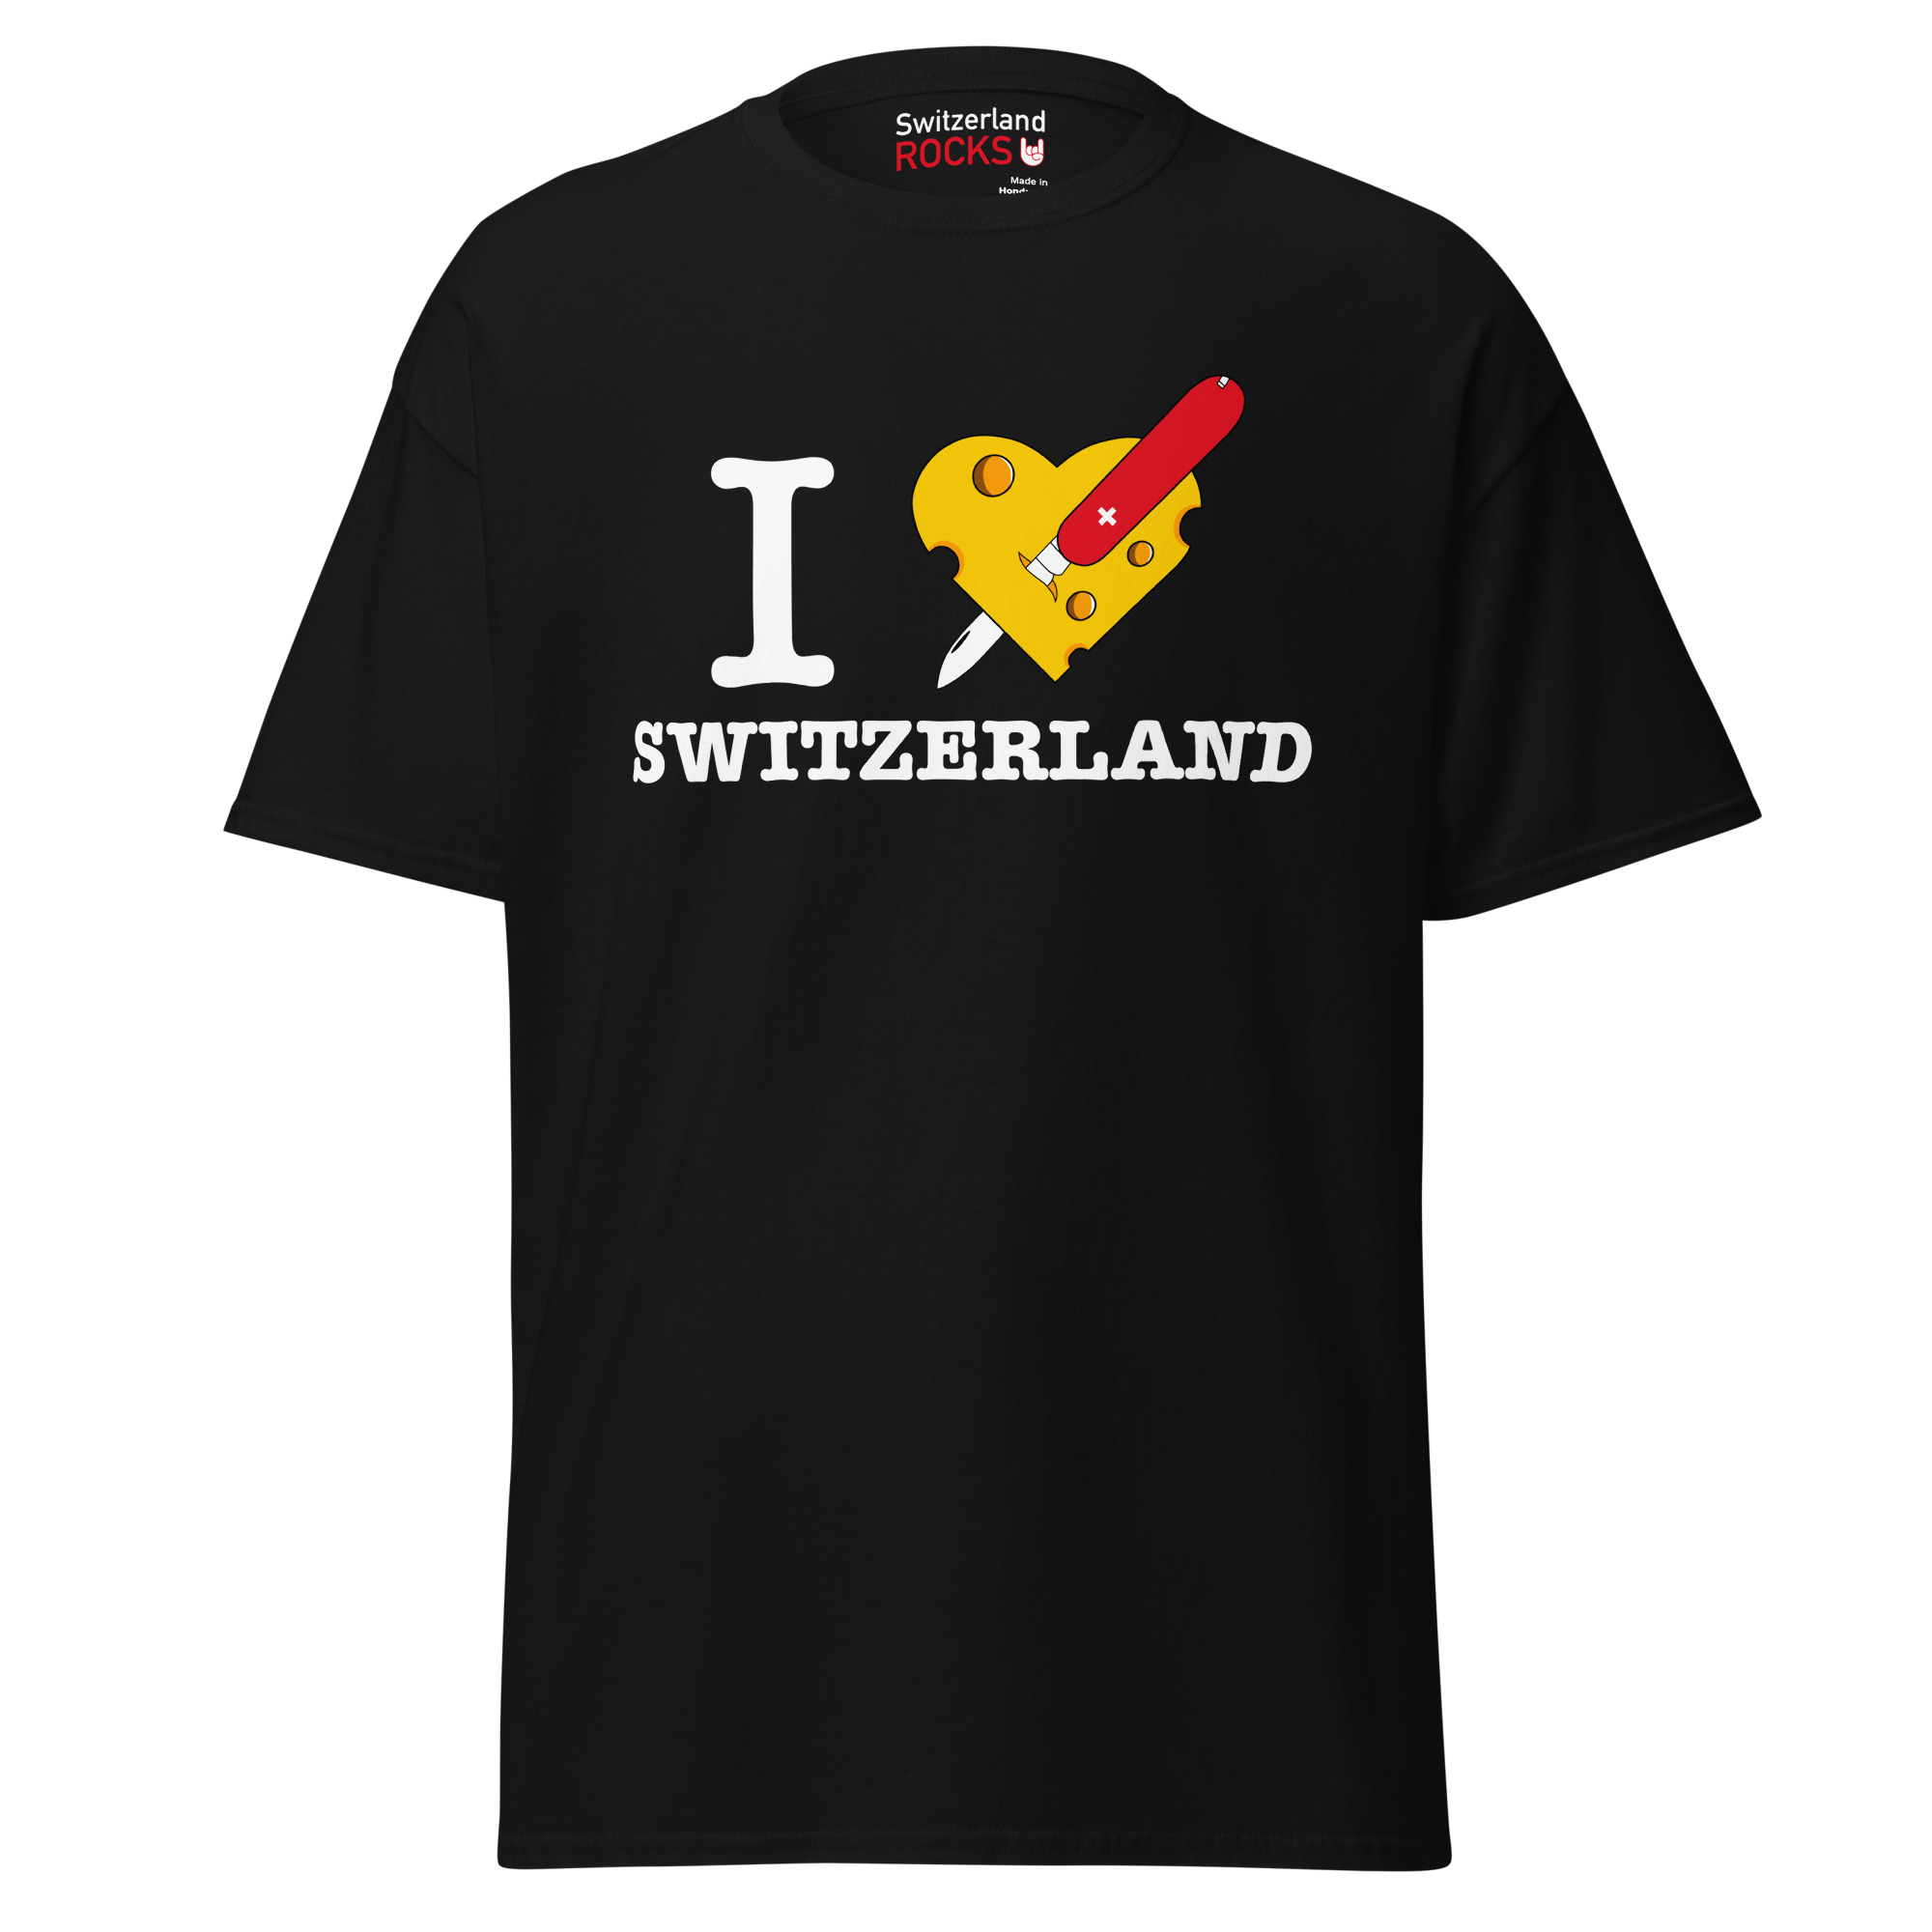 T-shirt noir – Switzerland Rocks – Swiss Knife T-Shirts Wearyt